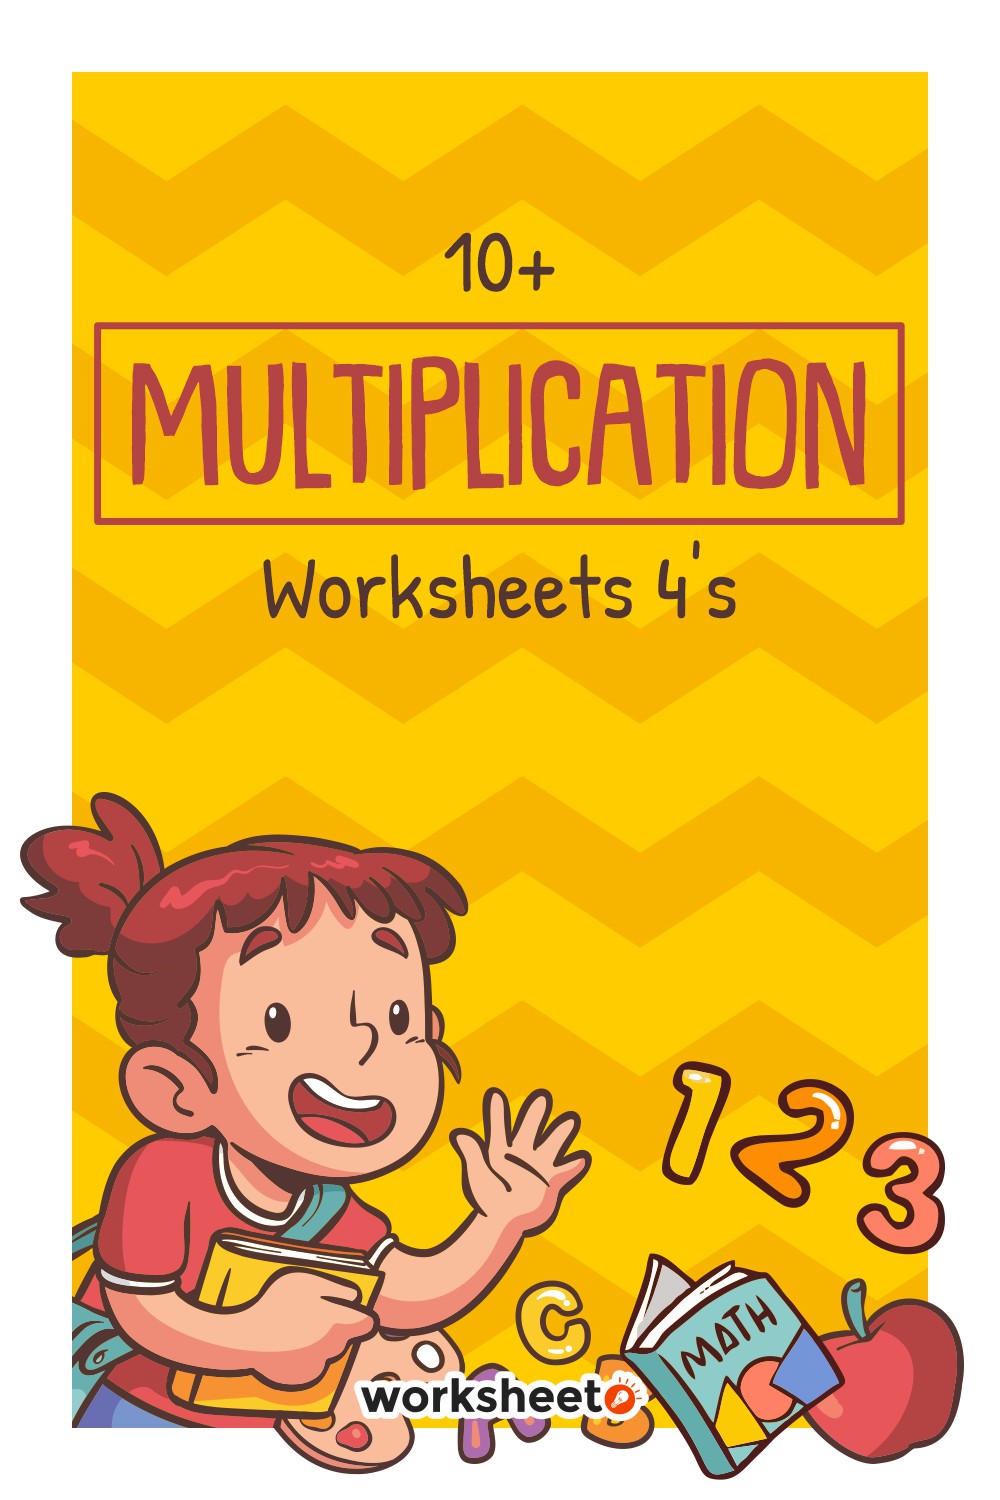 11-multiplication-worksheets-4s-worksheeto